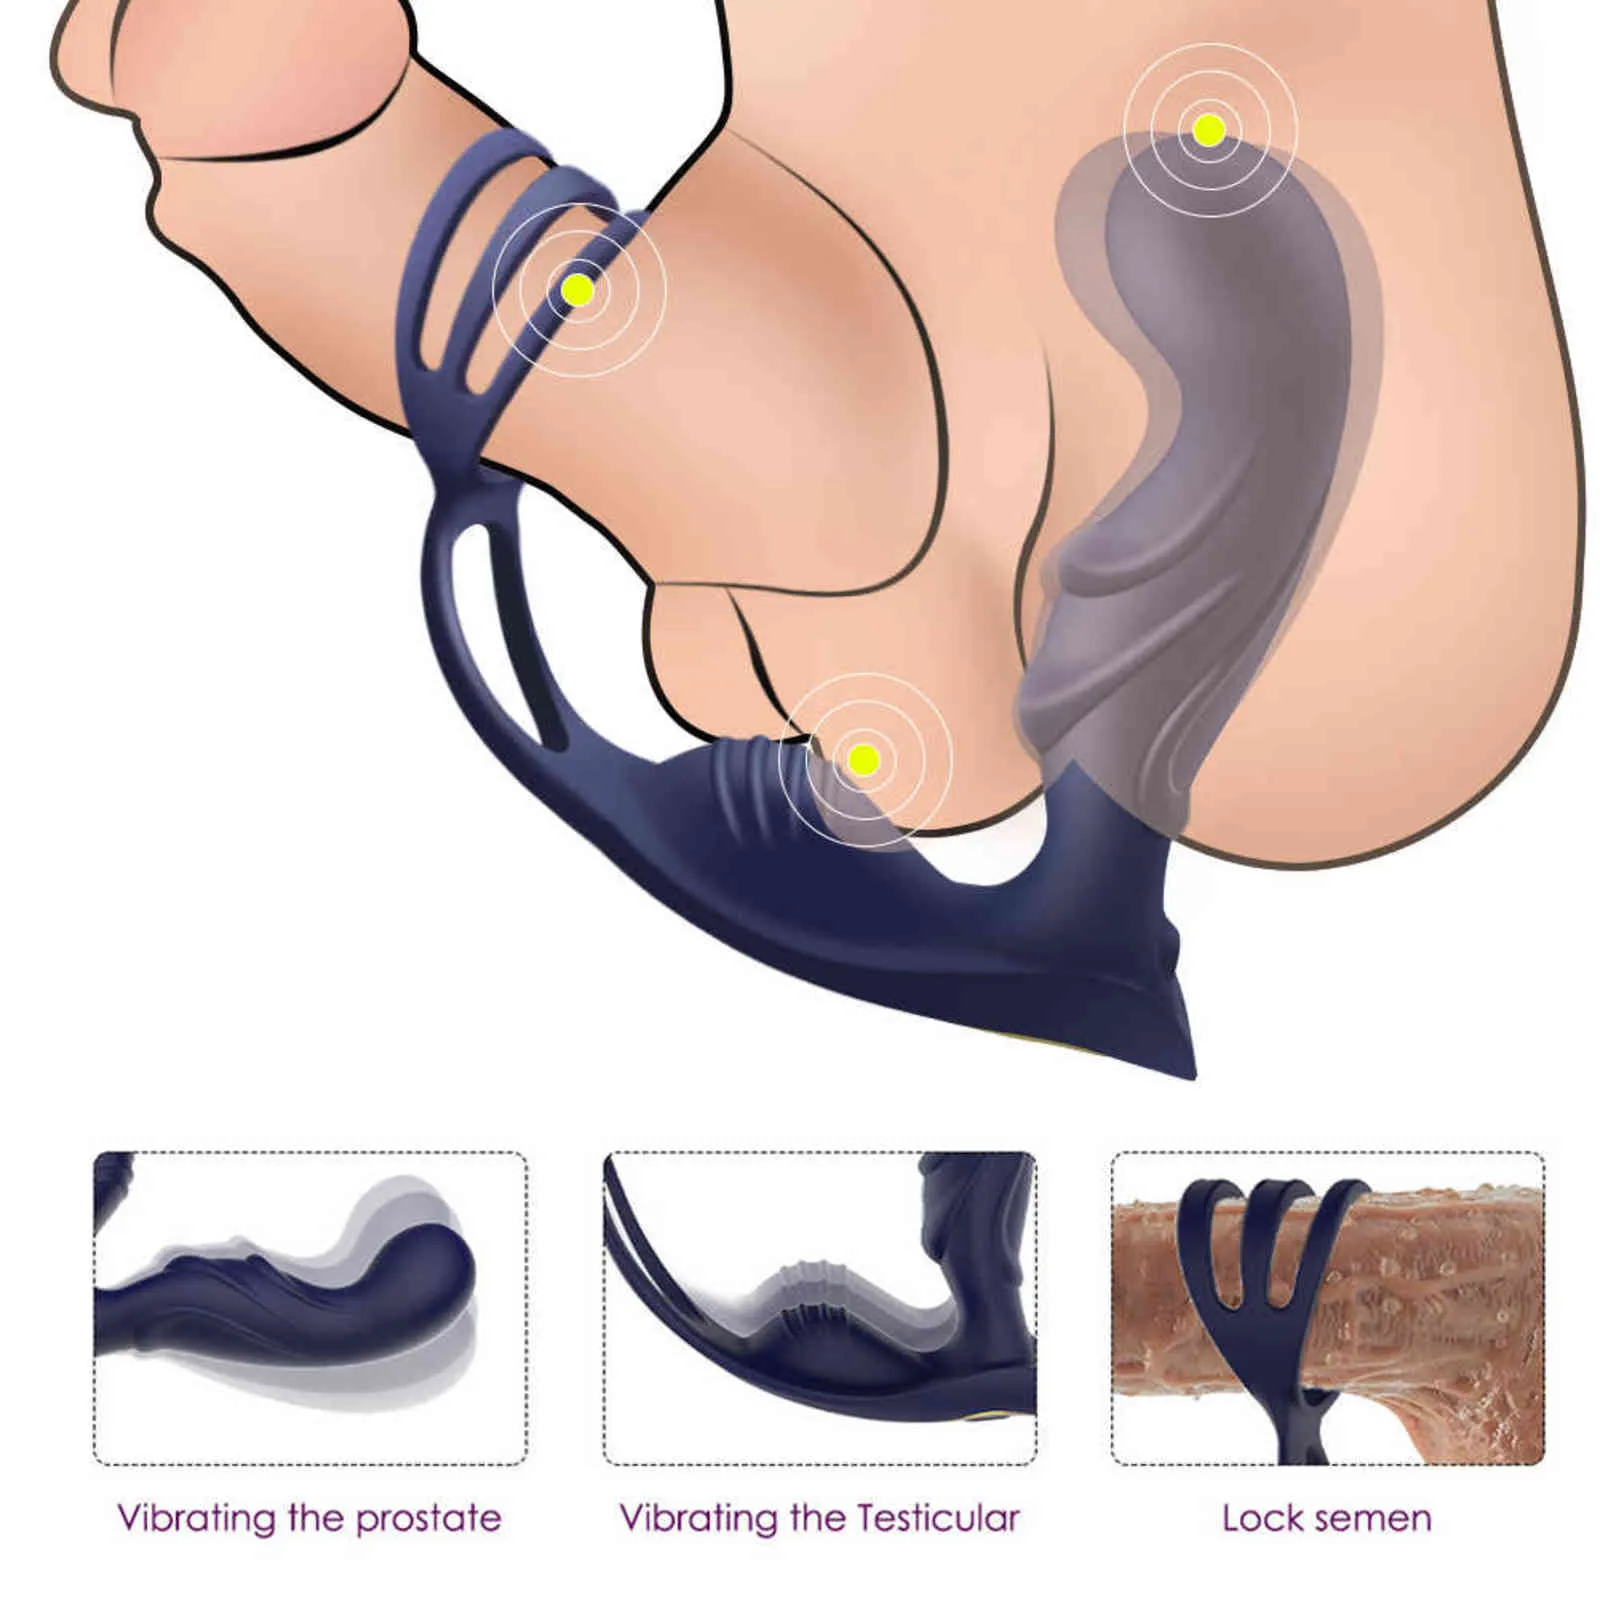 NXY Analspielzeug Männliche Prostatamassage Vibrator Plug Silikon Wasserdichter Massagestimulator Gesäßverzögerung Ejakulationsring Spielzeug für Männer 1125